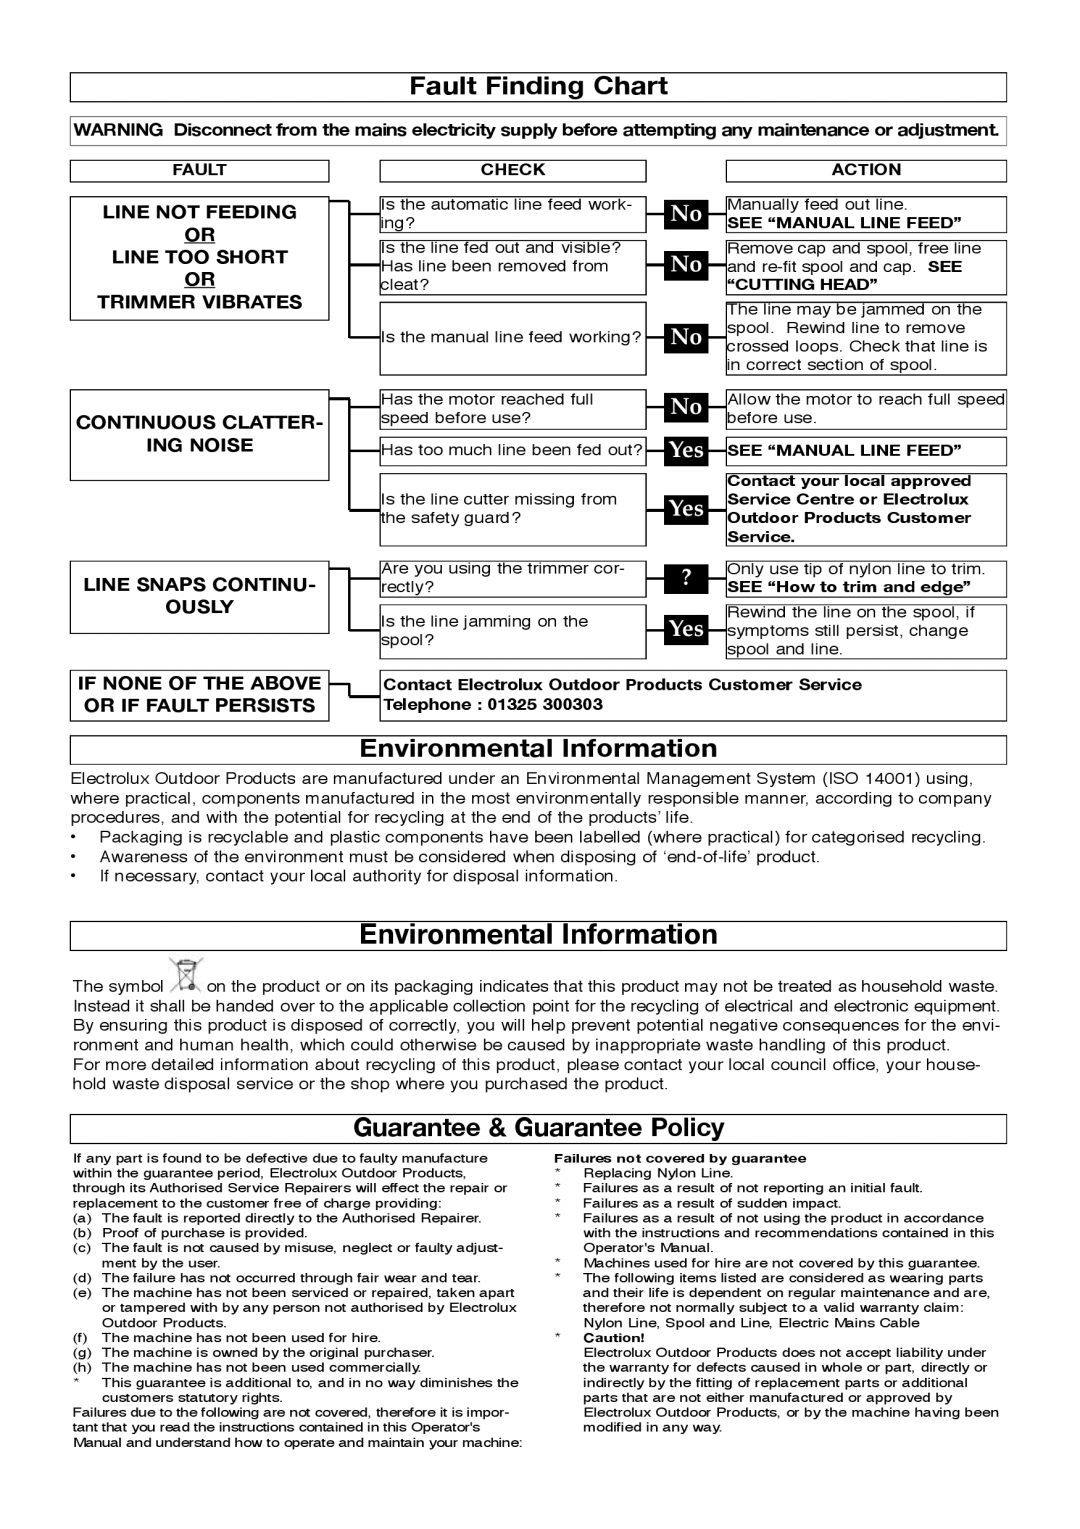 Flymo 511967501 manual Fault Finding Chart, Environmental Information, Guarantee & Guarantee Policy 